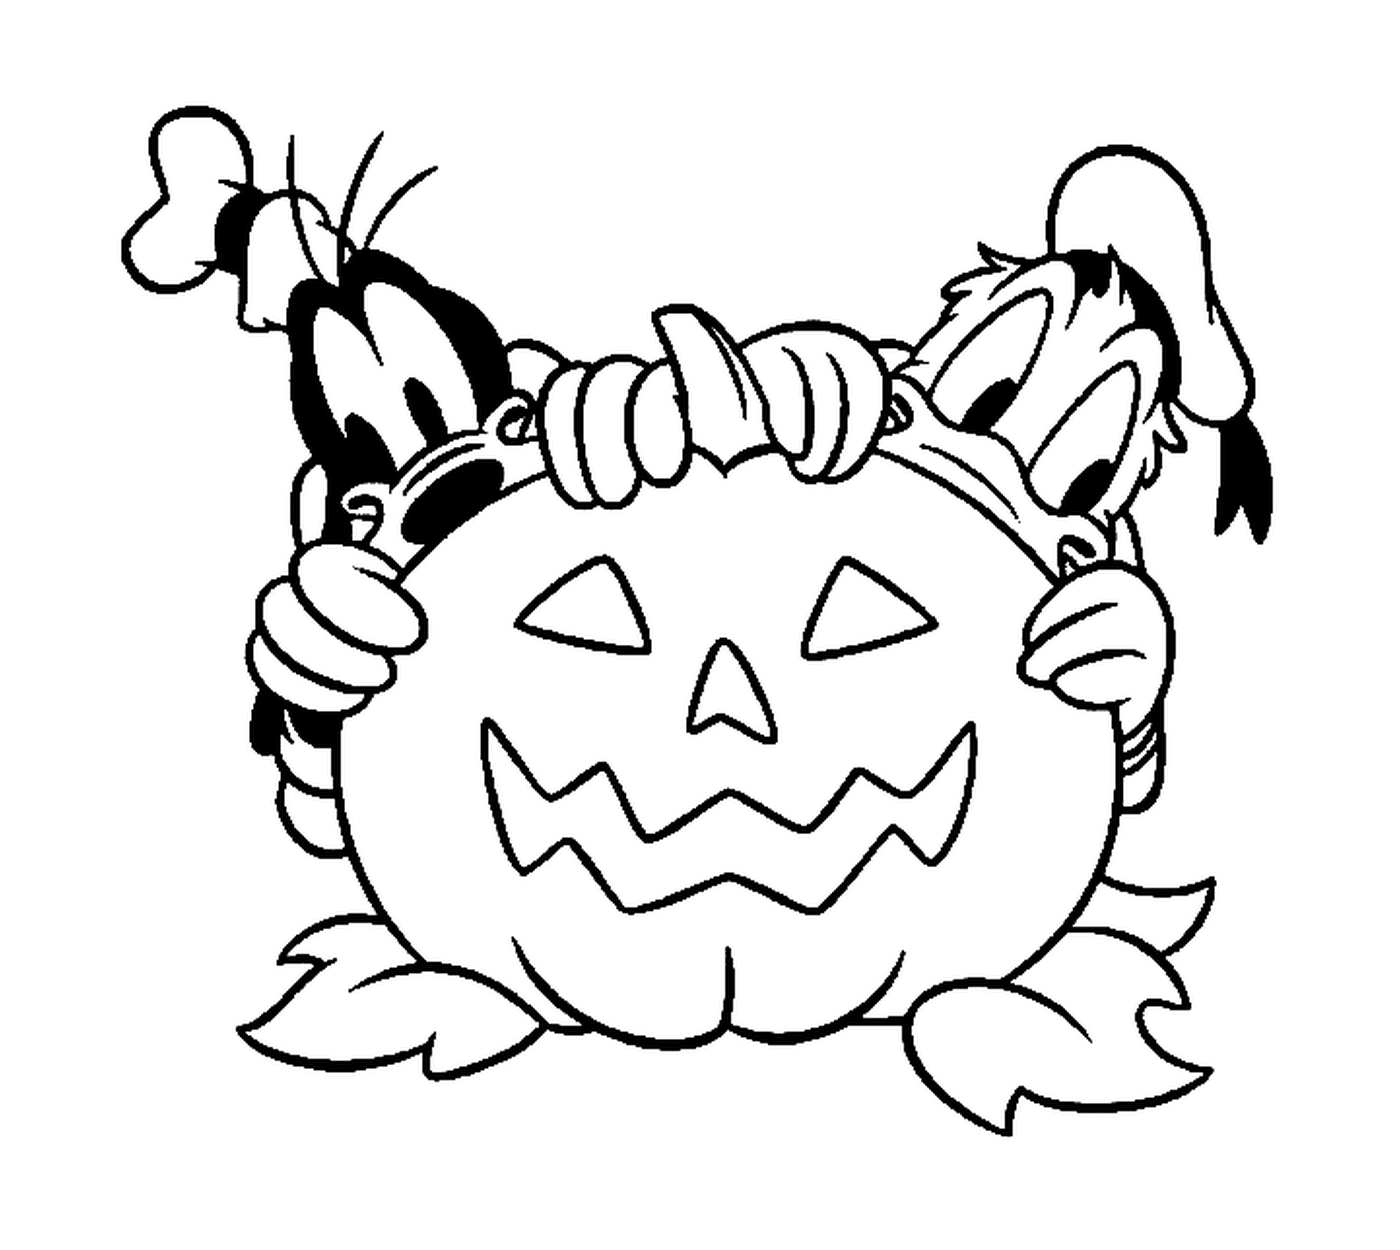  Дональд и Динго прячутся за тыковкой Хэллоуина 